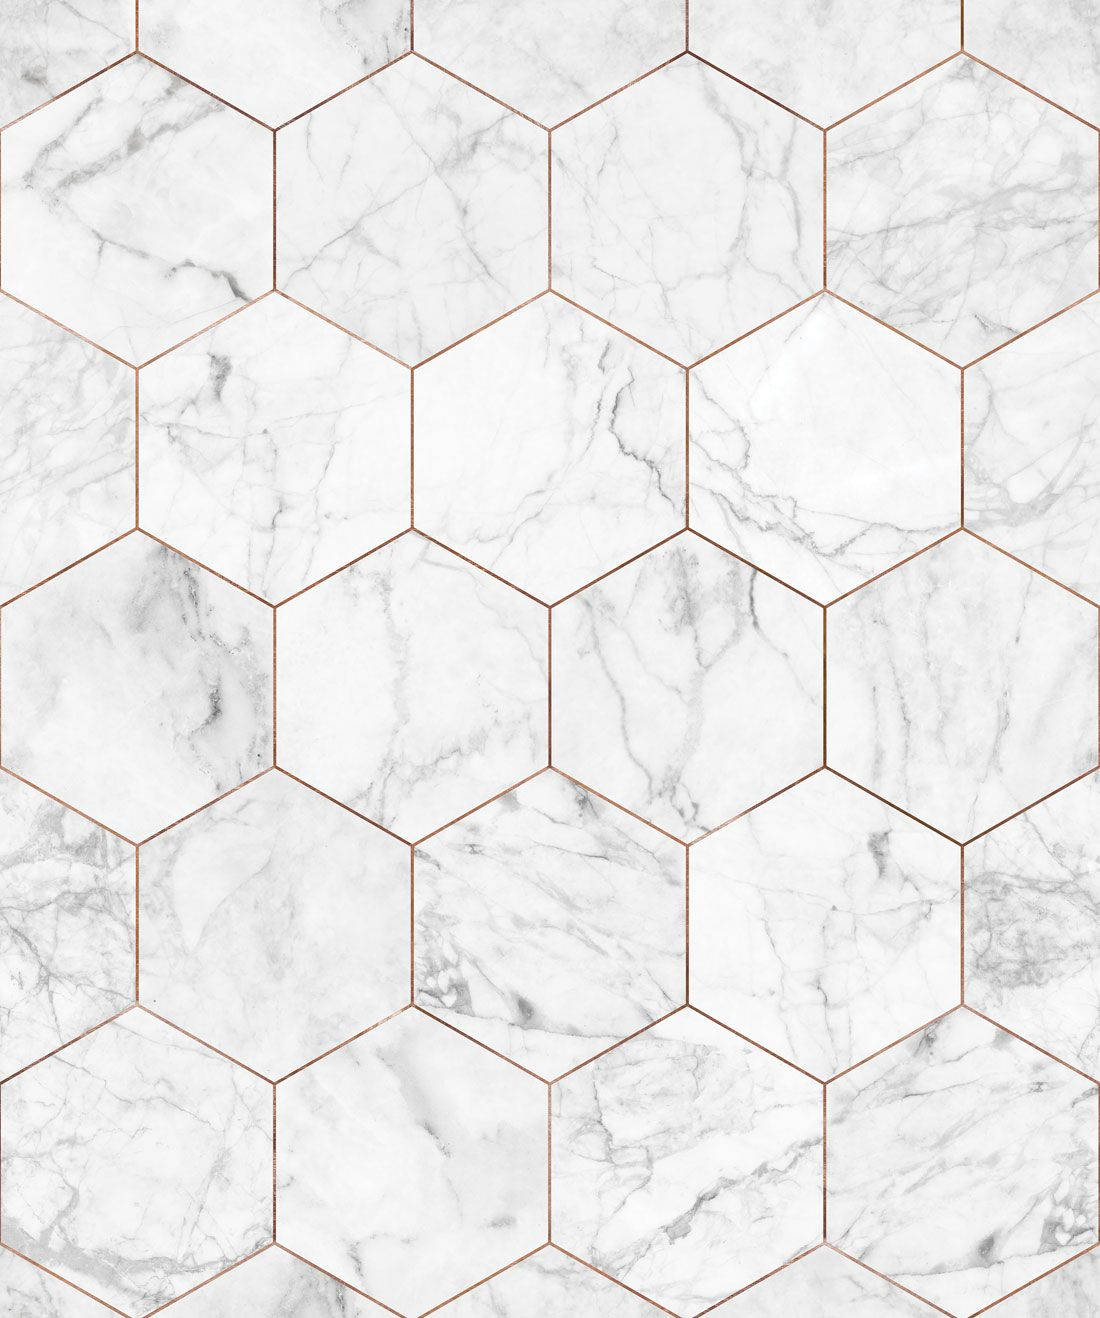 Hexagons On White Marble Wallpaper